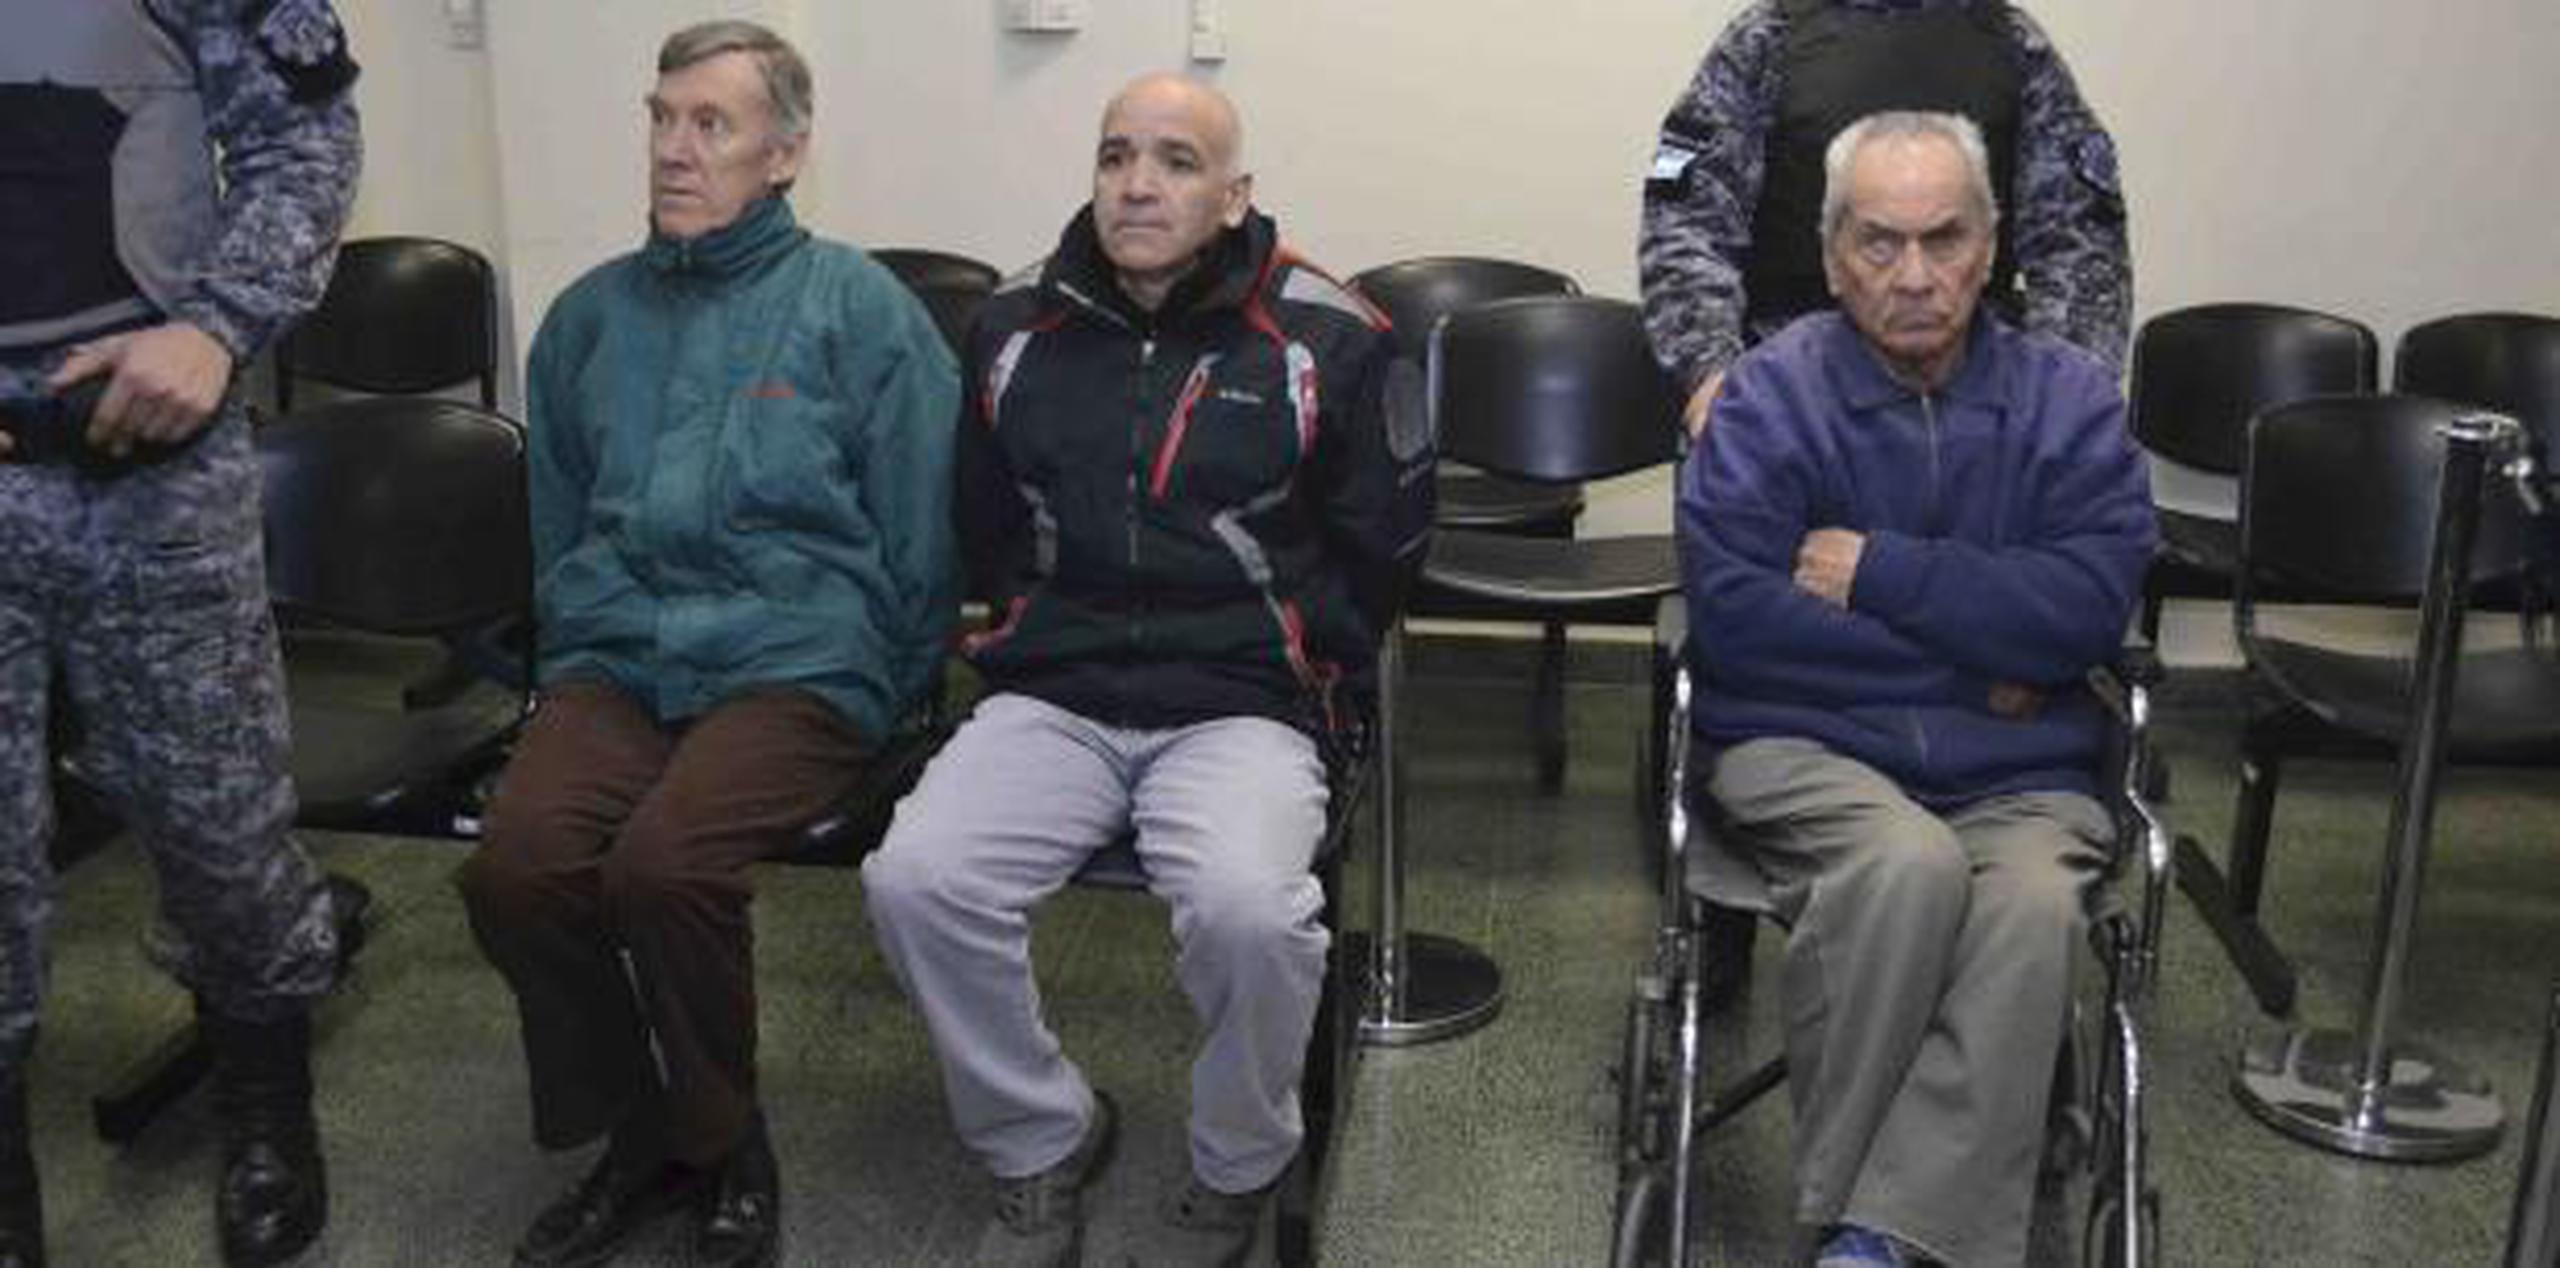 El sacerdote italiano Nicola Corradi, de 83 años, y el argentino Horacio Corbacho, de 59, escucharán el fallo condenatorio o absolutorio de un tribunal penal de la provincia de Mendoza. (AP)